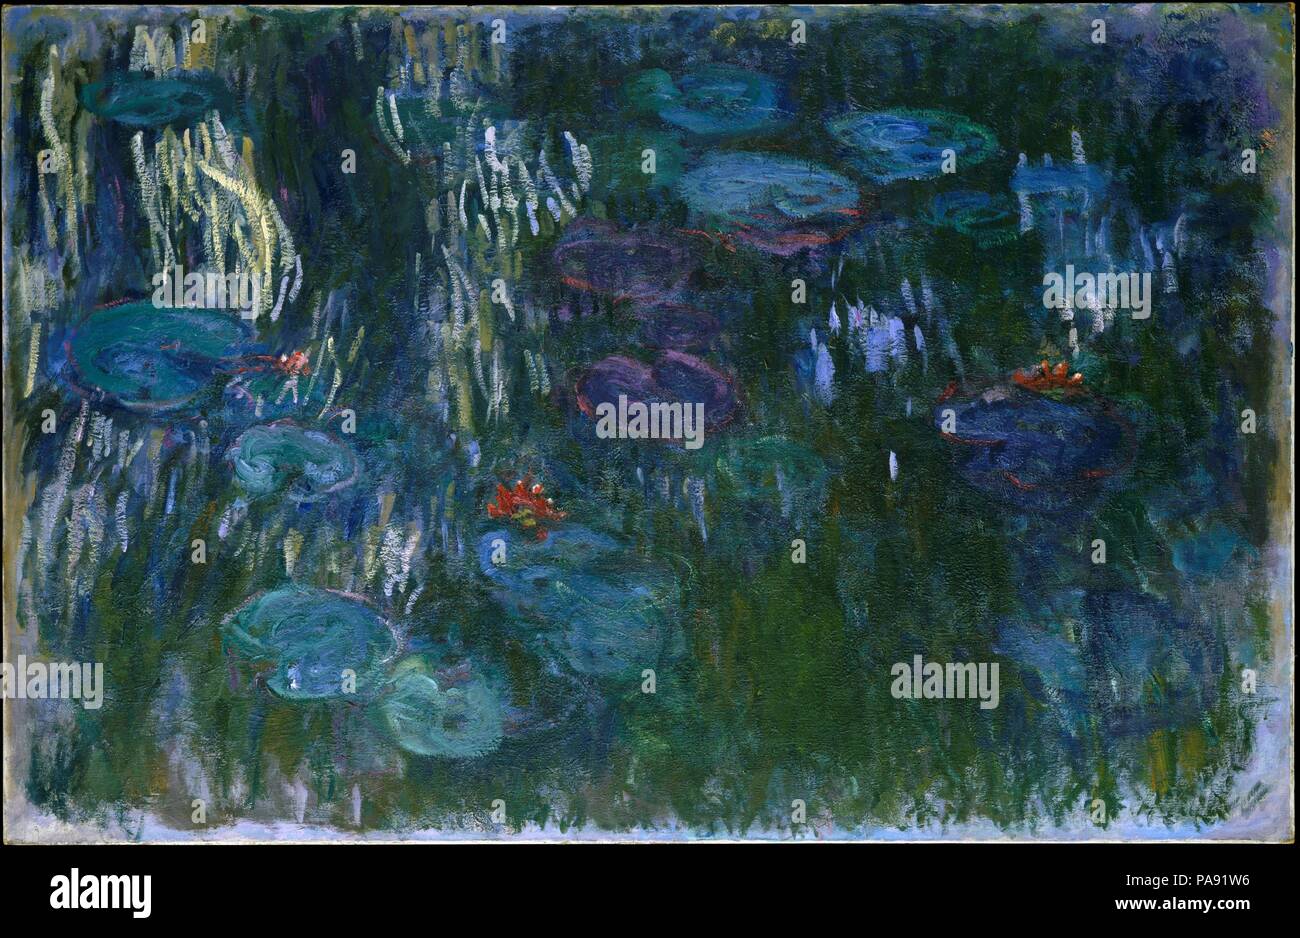 Seerosen. Künstler: Claude Monet (Französisch, Paris 1840-1926 Giverny). Abmessungen: 51 1/4 x 79 in. (130.2 x 200.7 cm). Datum: 1916-19. Als Teil seiner umfangreichen Gartenarbeit Pläne in Giverny, Monet hatte einen Teich gegraben und bepflanzt mit Lilien in 1893. Von 1899 an war er wiederholt wandte sich an den Themen, die versuchen, Eindruck, jeder Beobachtung und Reflexion der Blumen und Wasser zu erfassen. Zu der Zeit, als er diese Arbeit in den späten Teens begann, Monet hatte eine völlig neue, Flüssigkeit und etwas kühnen Stil der Malerei, in der die Seerosenteich wurde zum Ausgangspunkt für eine fast abstra erreicht Stockfoto